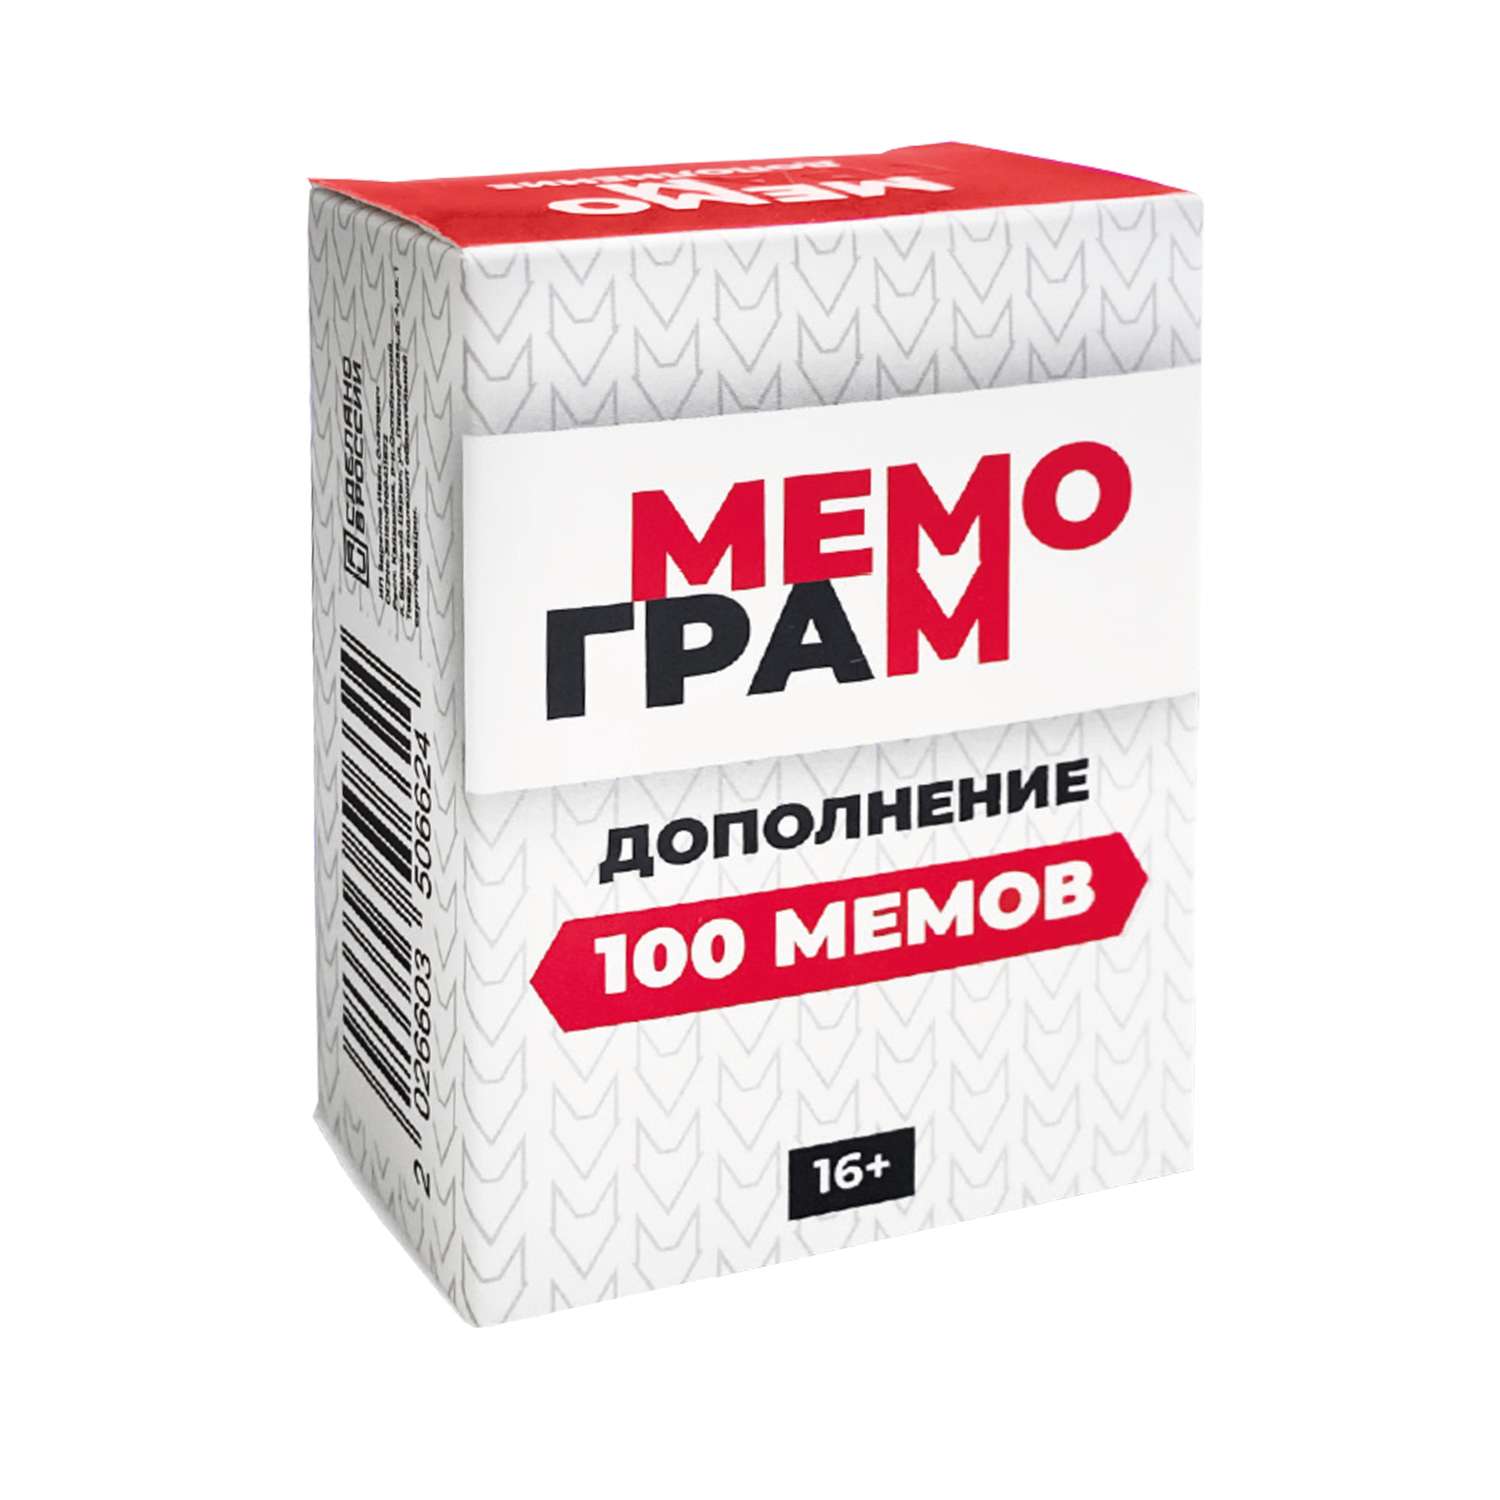 Дополнение к настольной игре Мемограм 100 карточек memchik - фото 1